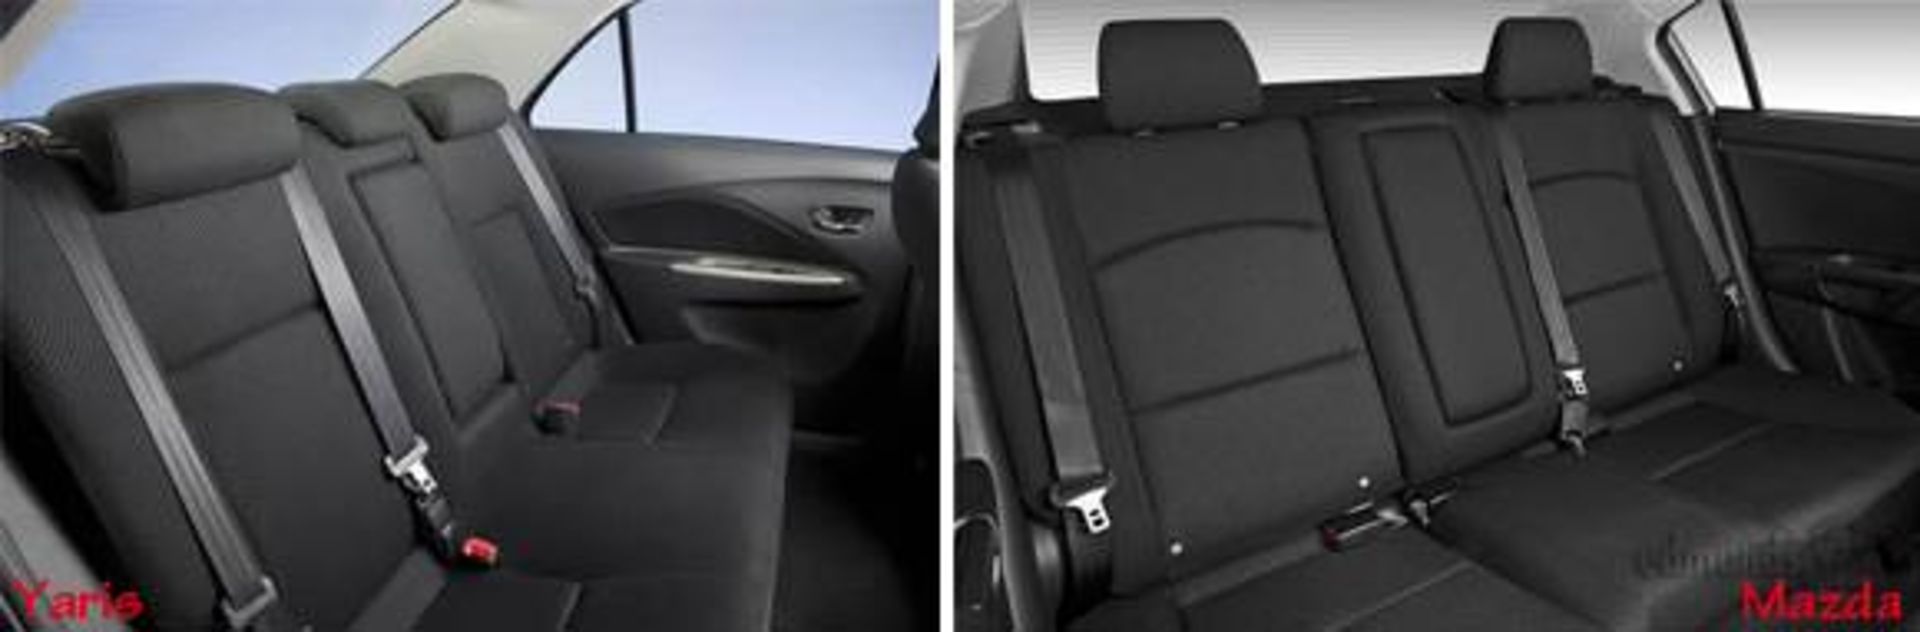 Mazda3-vs-yaris-sedan-2009-Backseat